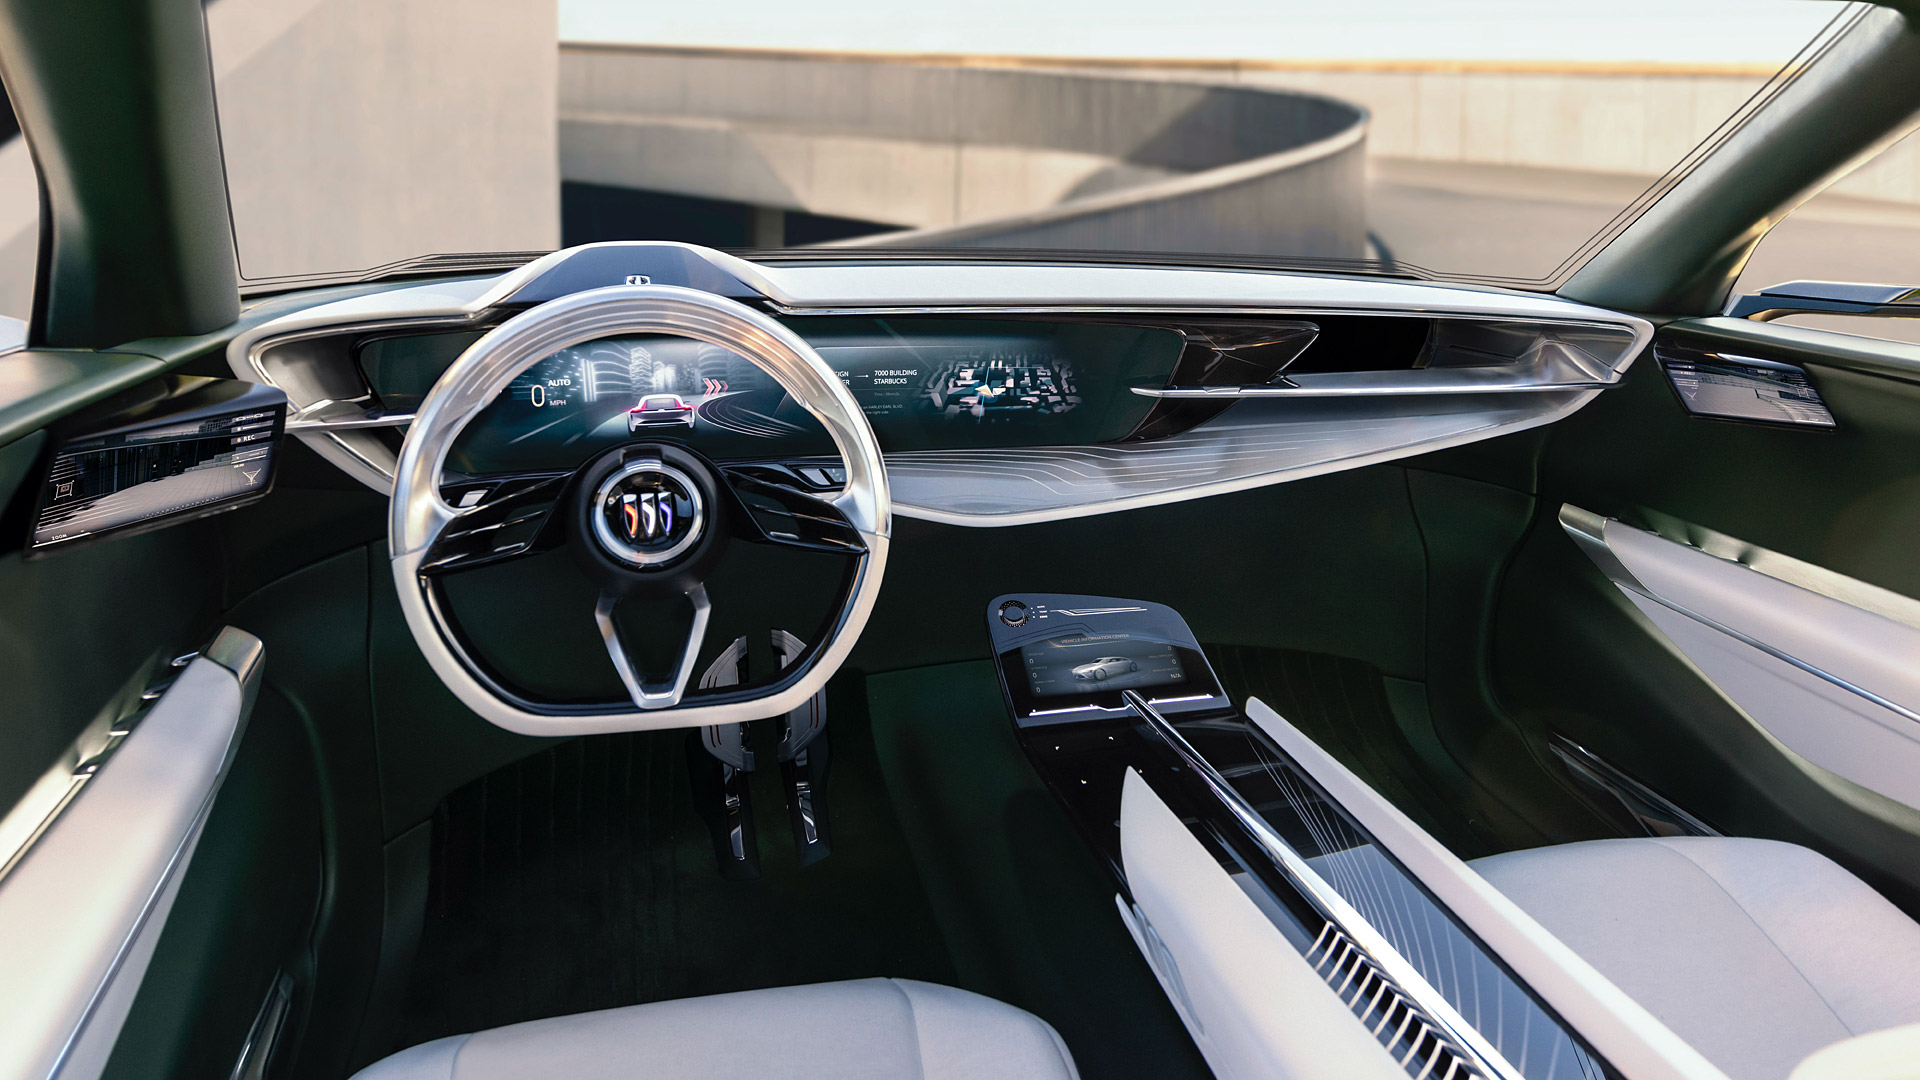  2022 Buick Wildcat EV Concept Wallpaper.